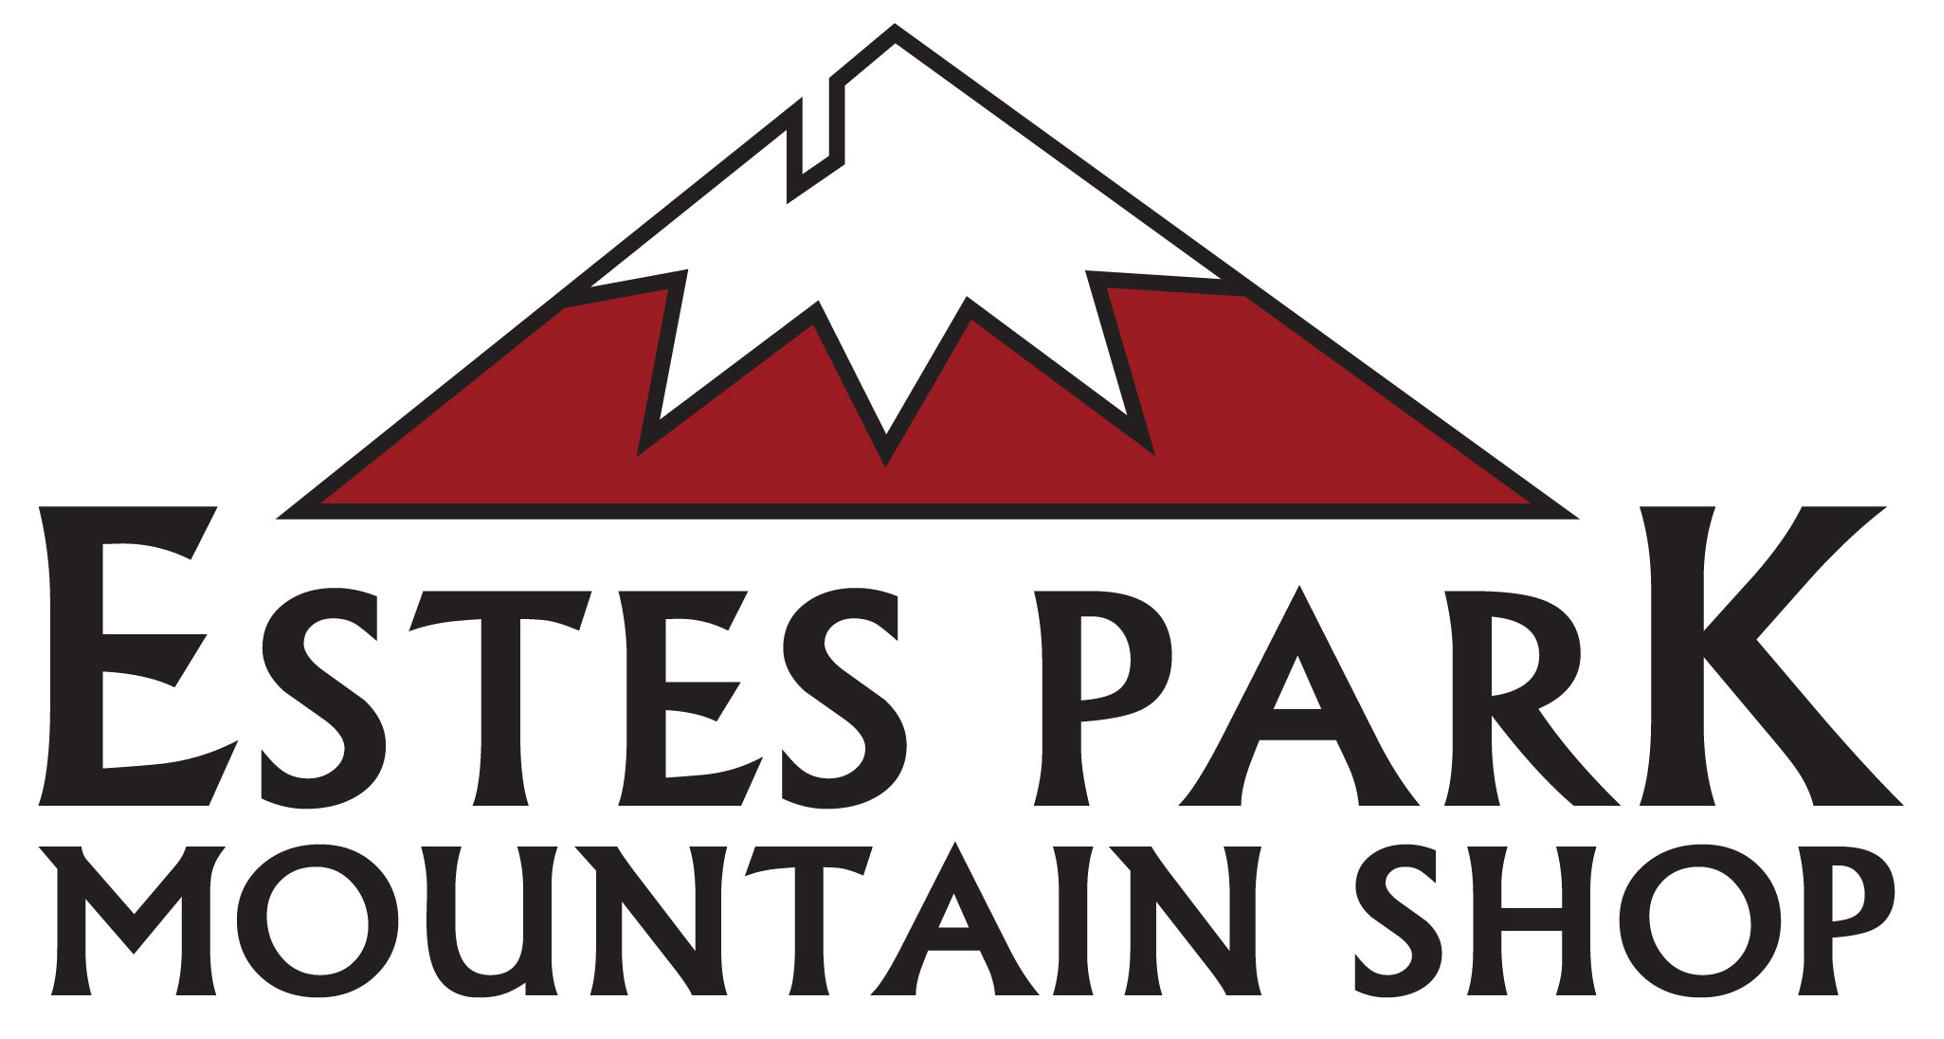 Estes Park Mountain Shop logo